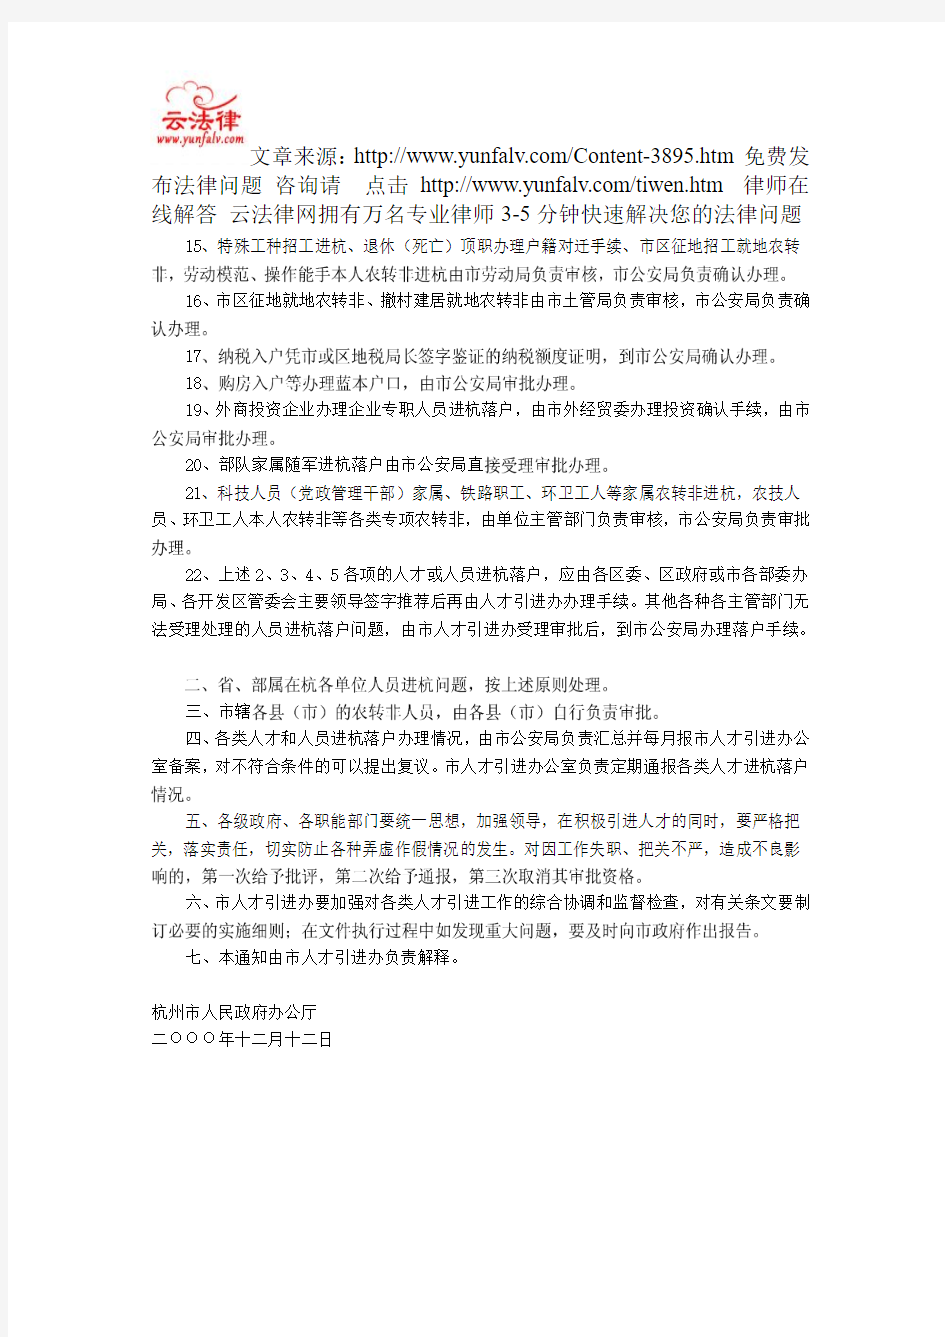 杭州市人民政府办公厅关于进一步做好各类人员进杭落户有关工作的通知